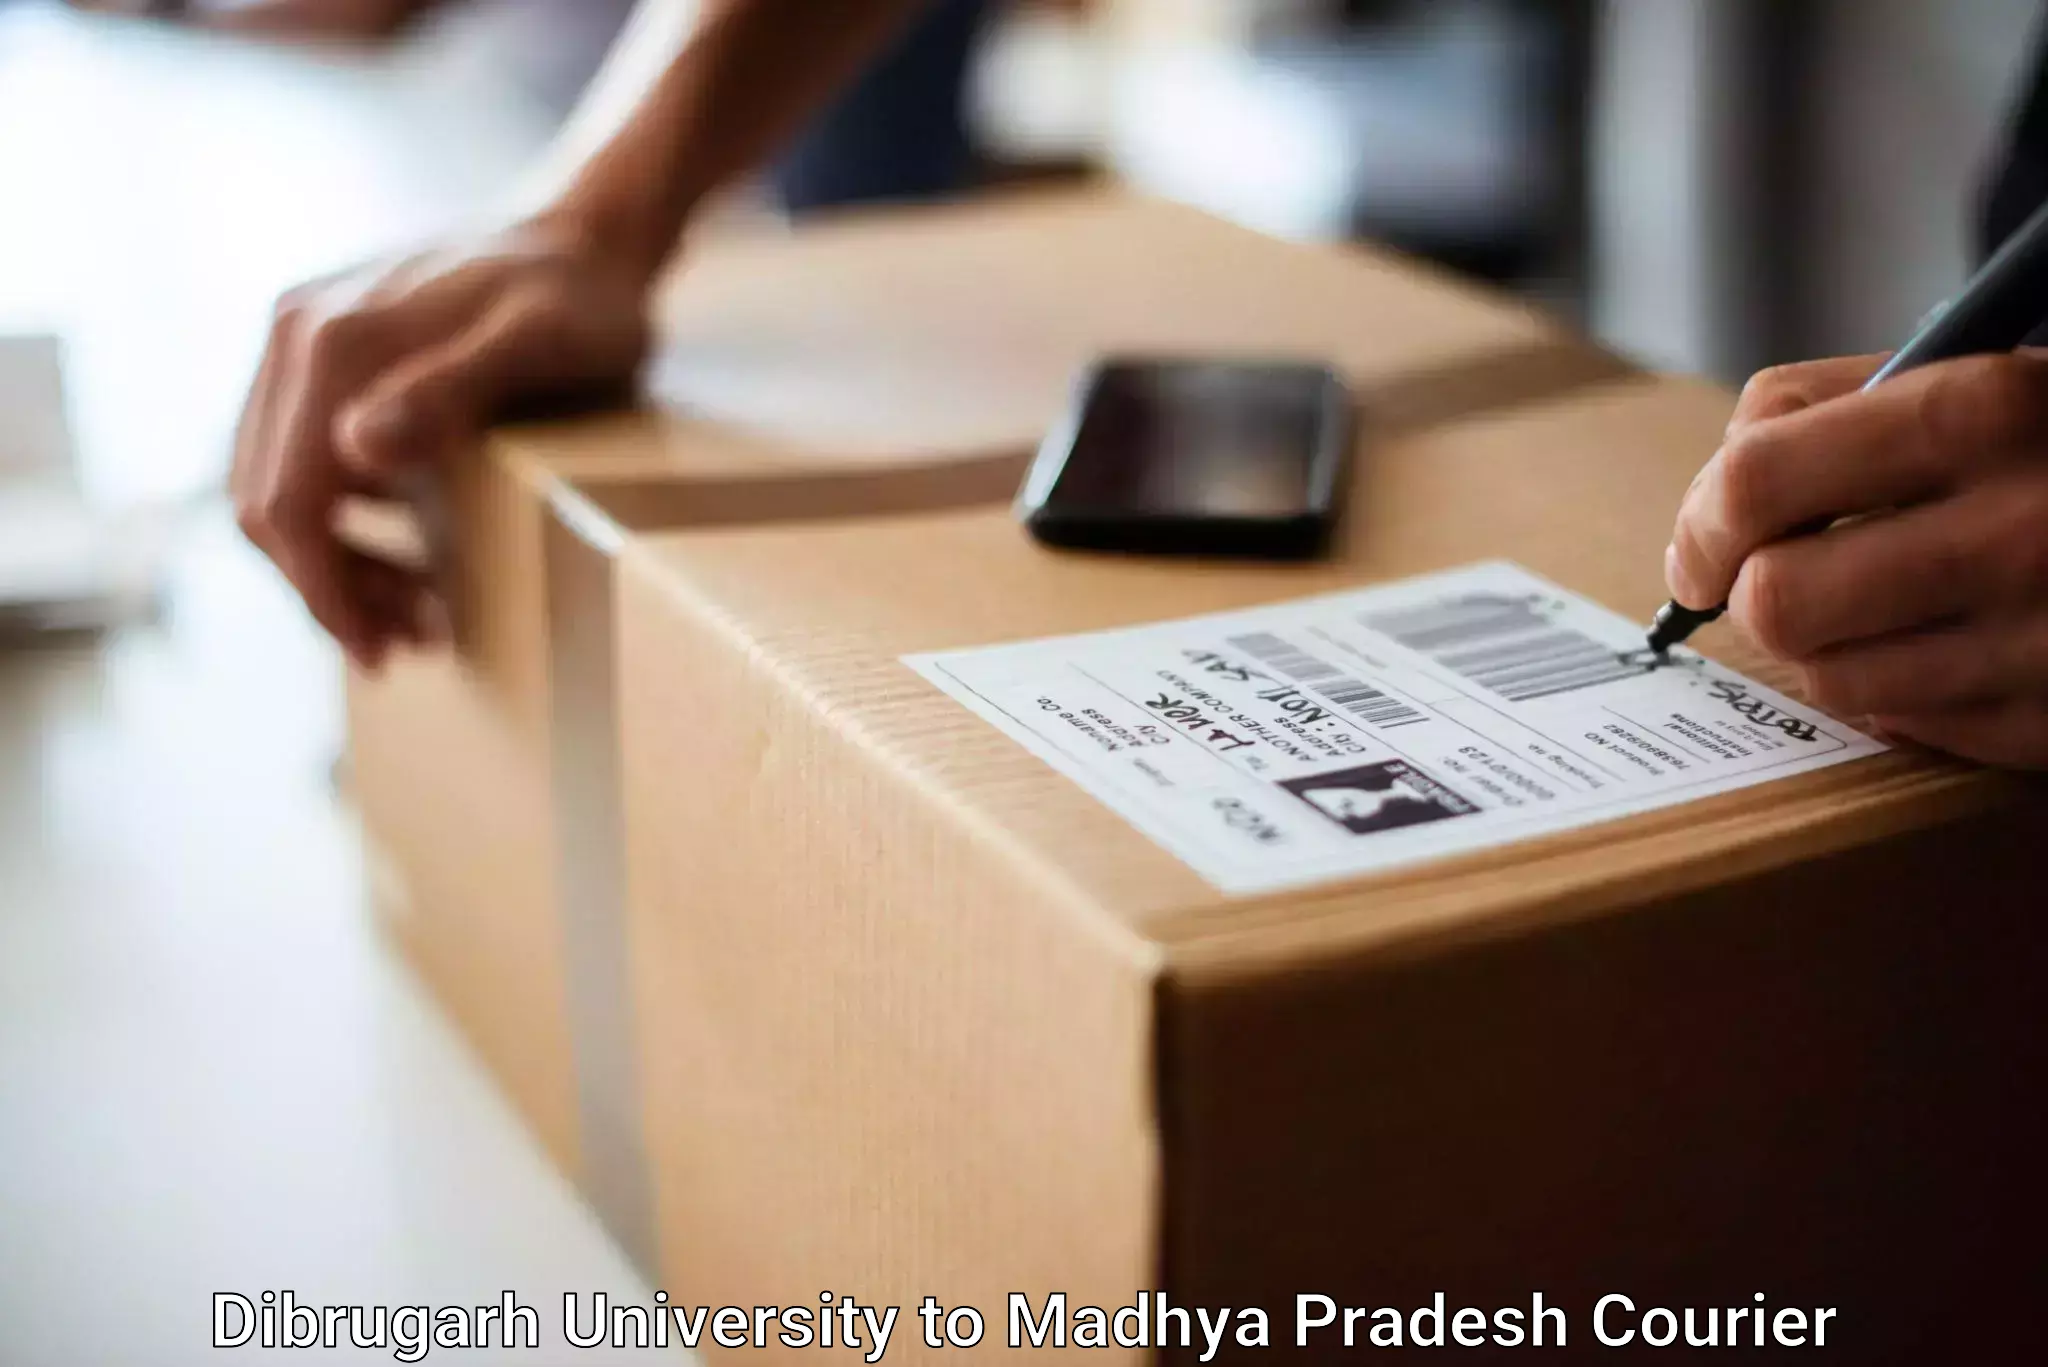 Baggage delivery estimate Dibrugarh University to Gwalior